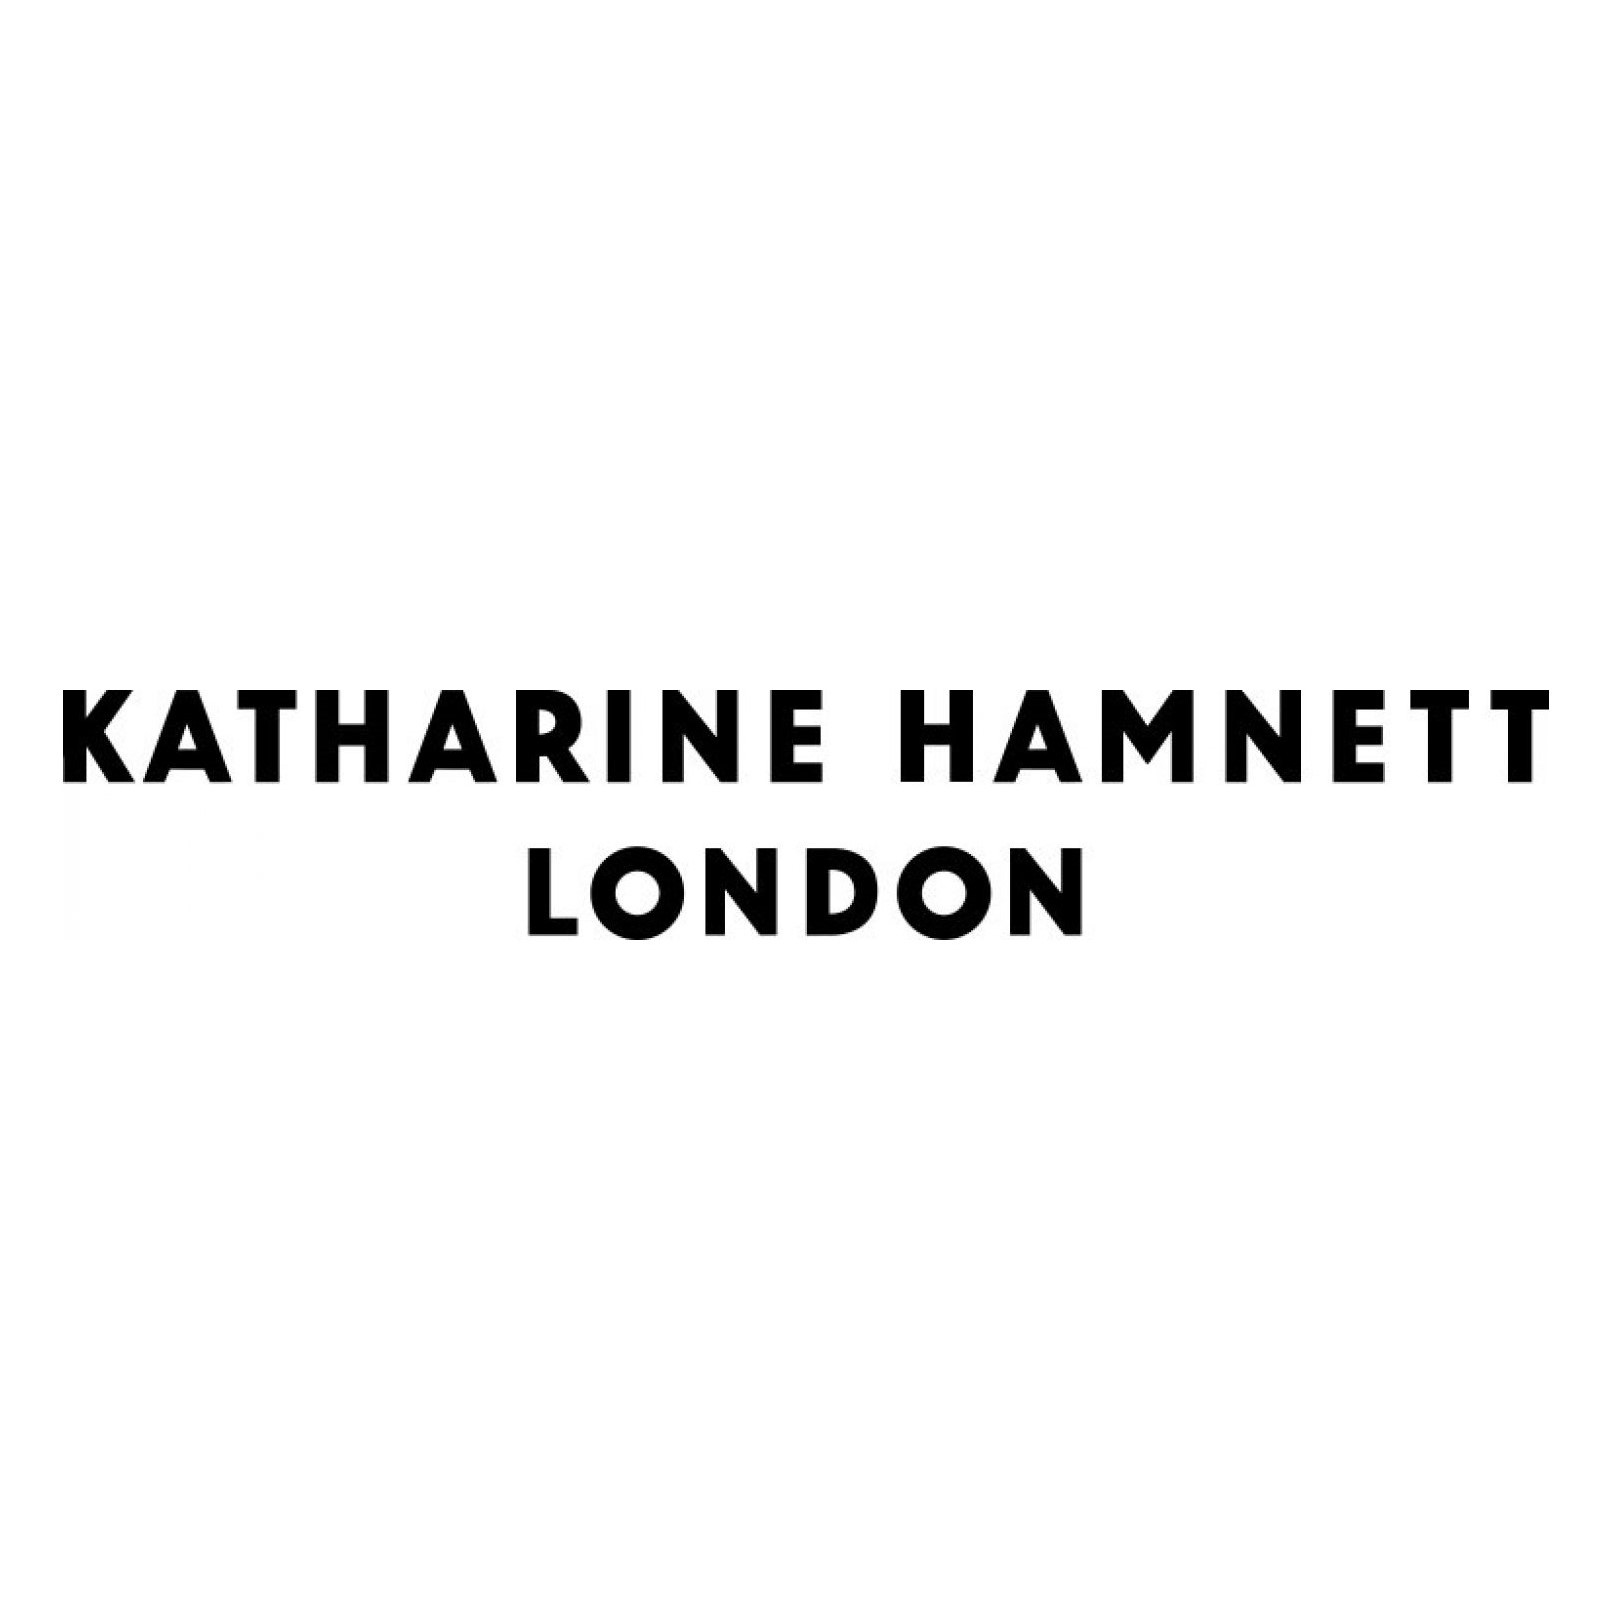 Katherine Hammett London